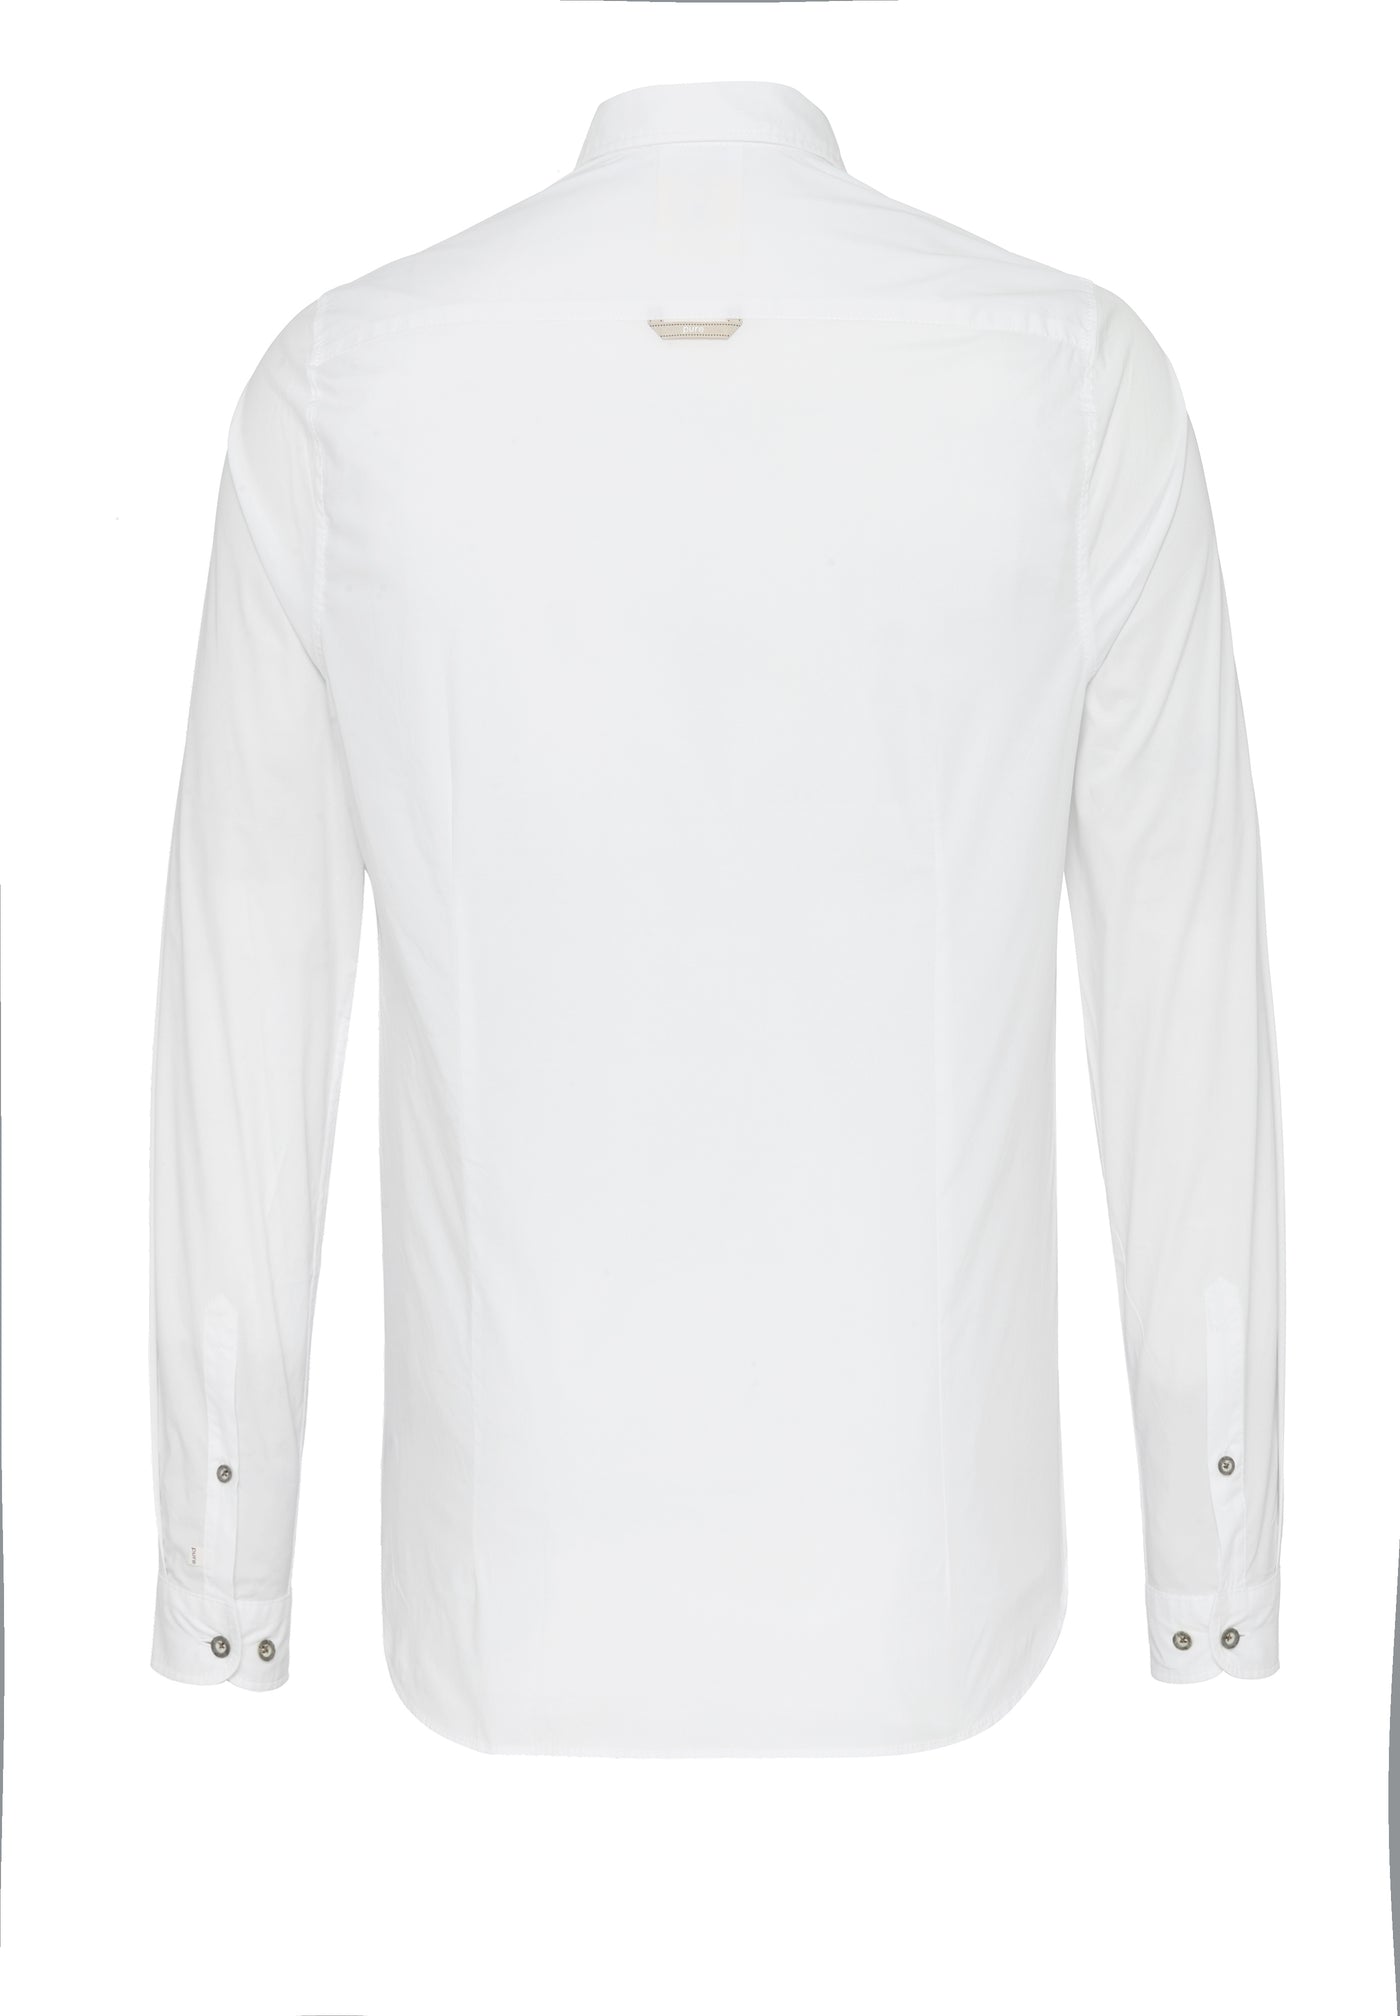 5011-21190 - Tracht Hemd slim fit - weiß